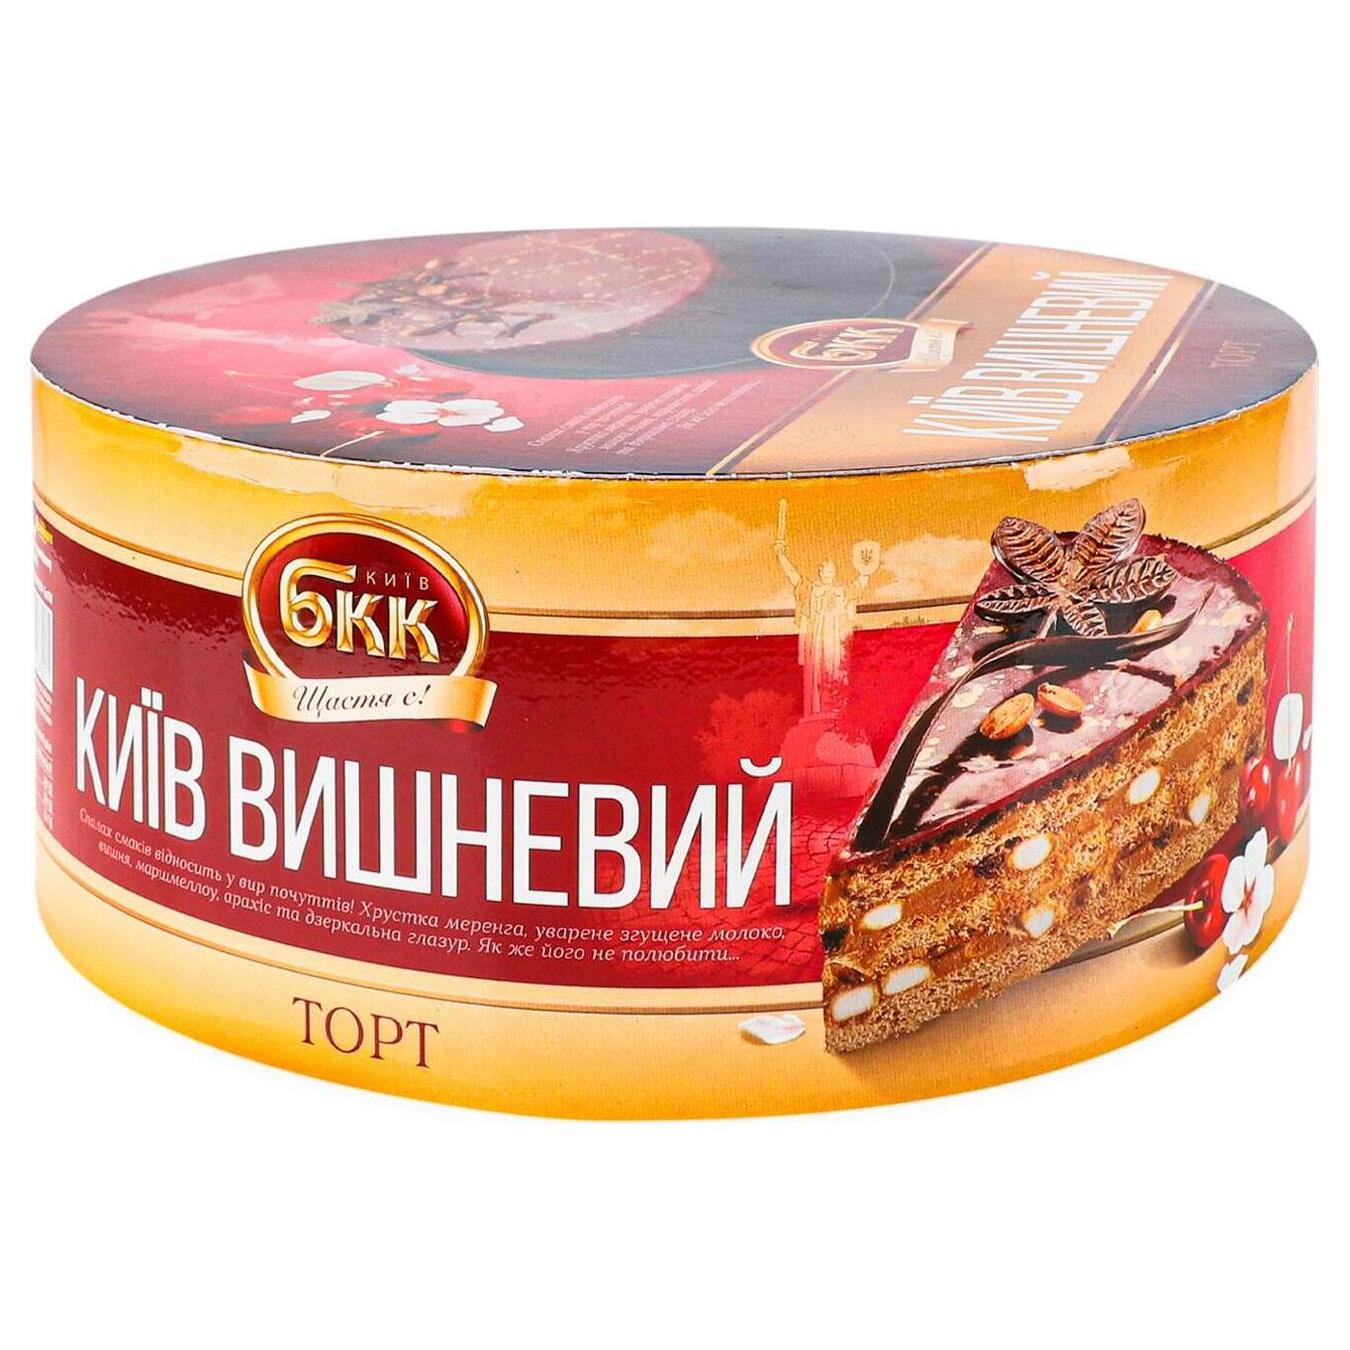 Торт БКК Київ вишневий 450г